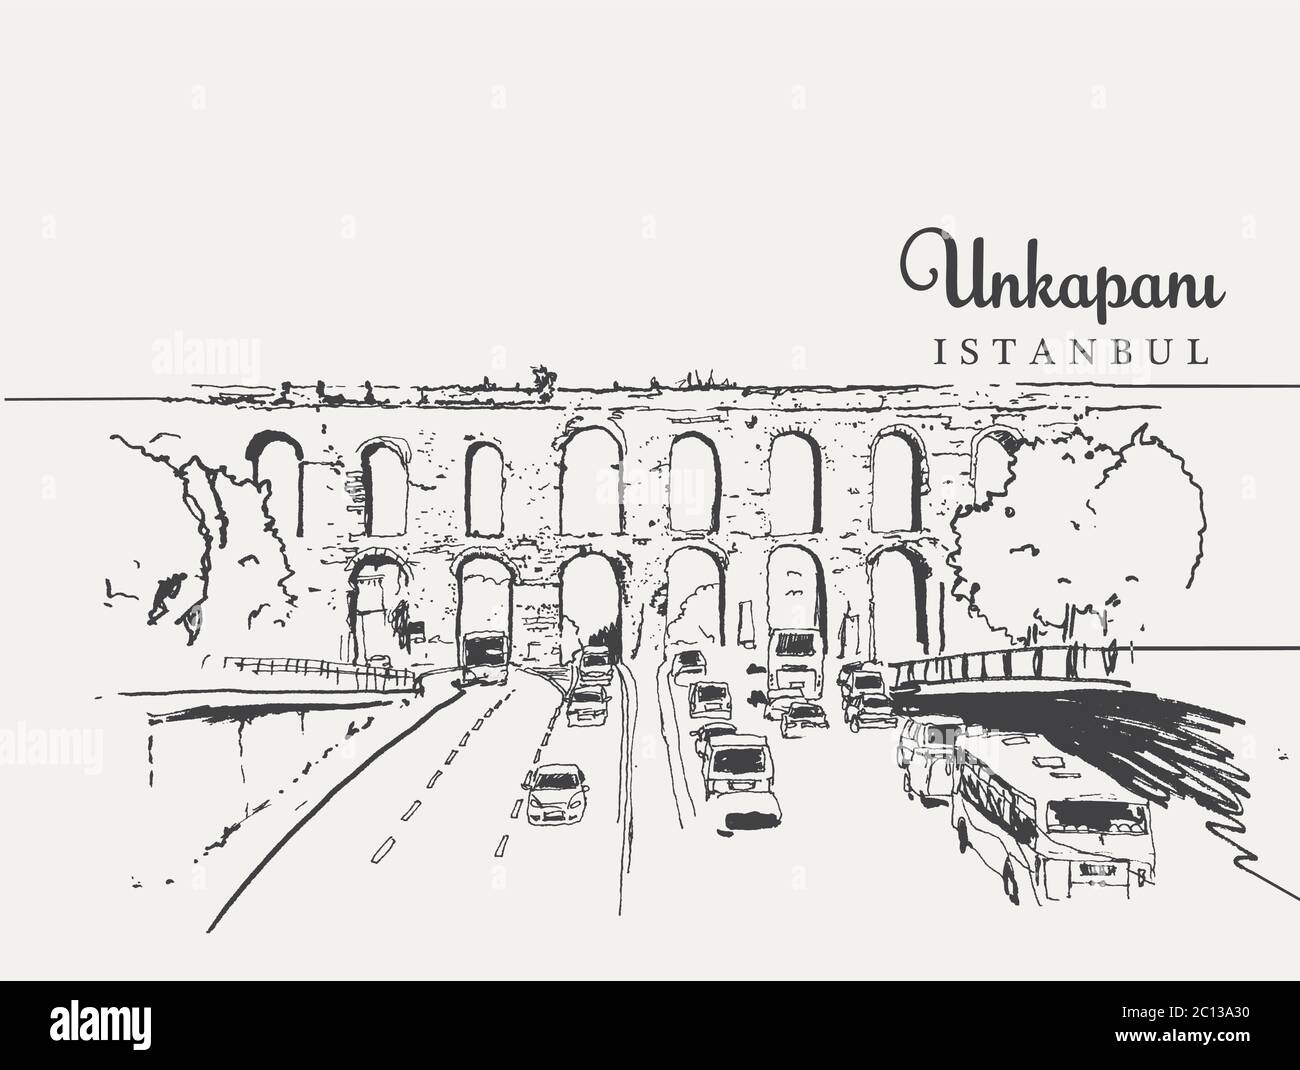 Dessin d'illustration de l'ancien aqueduc construit dans la période Byzance dans le district d'Unkapani d'aujourd'hui à Istanbul. L'arche de pierre a été utilisée par carr Illustration de Vecteur